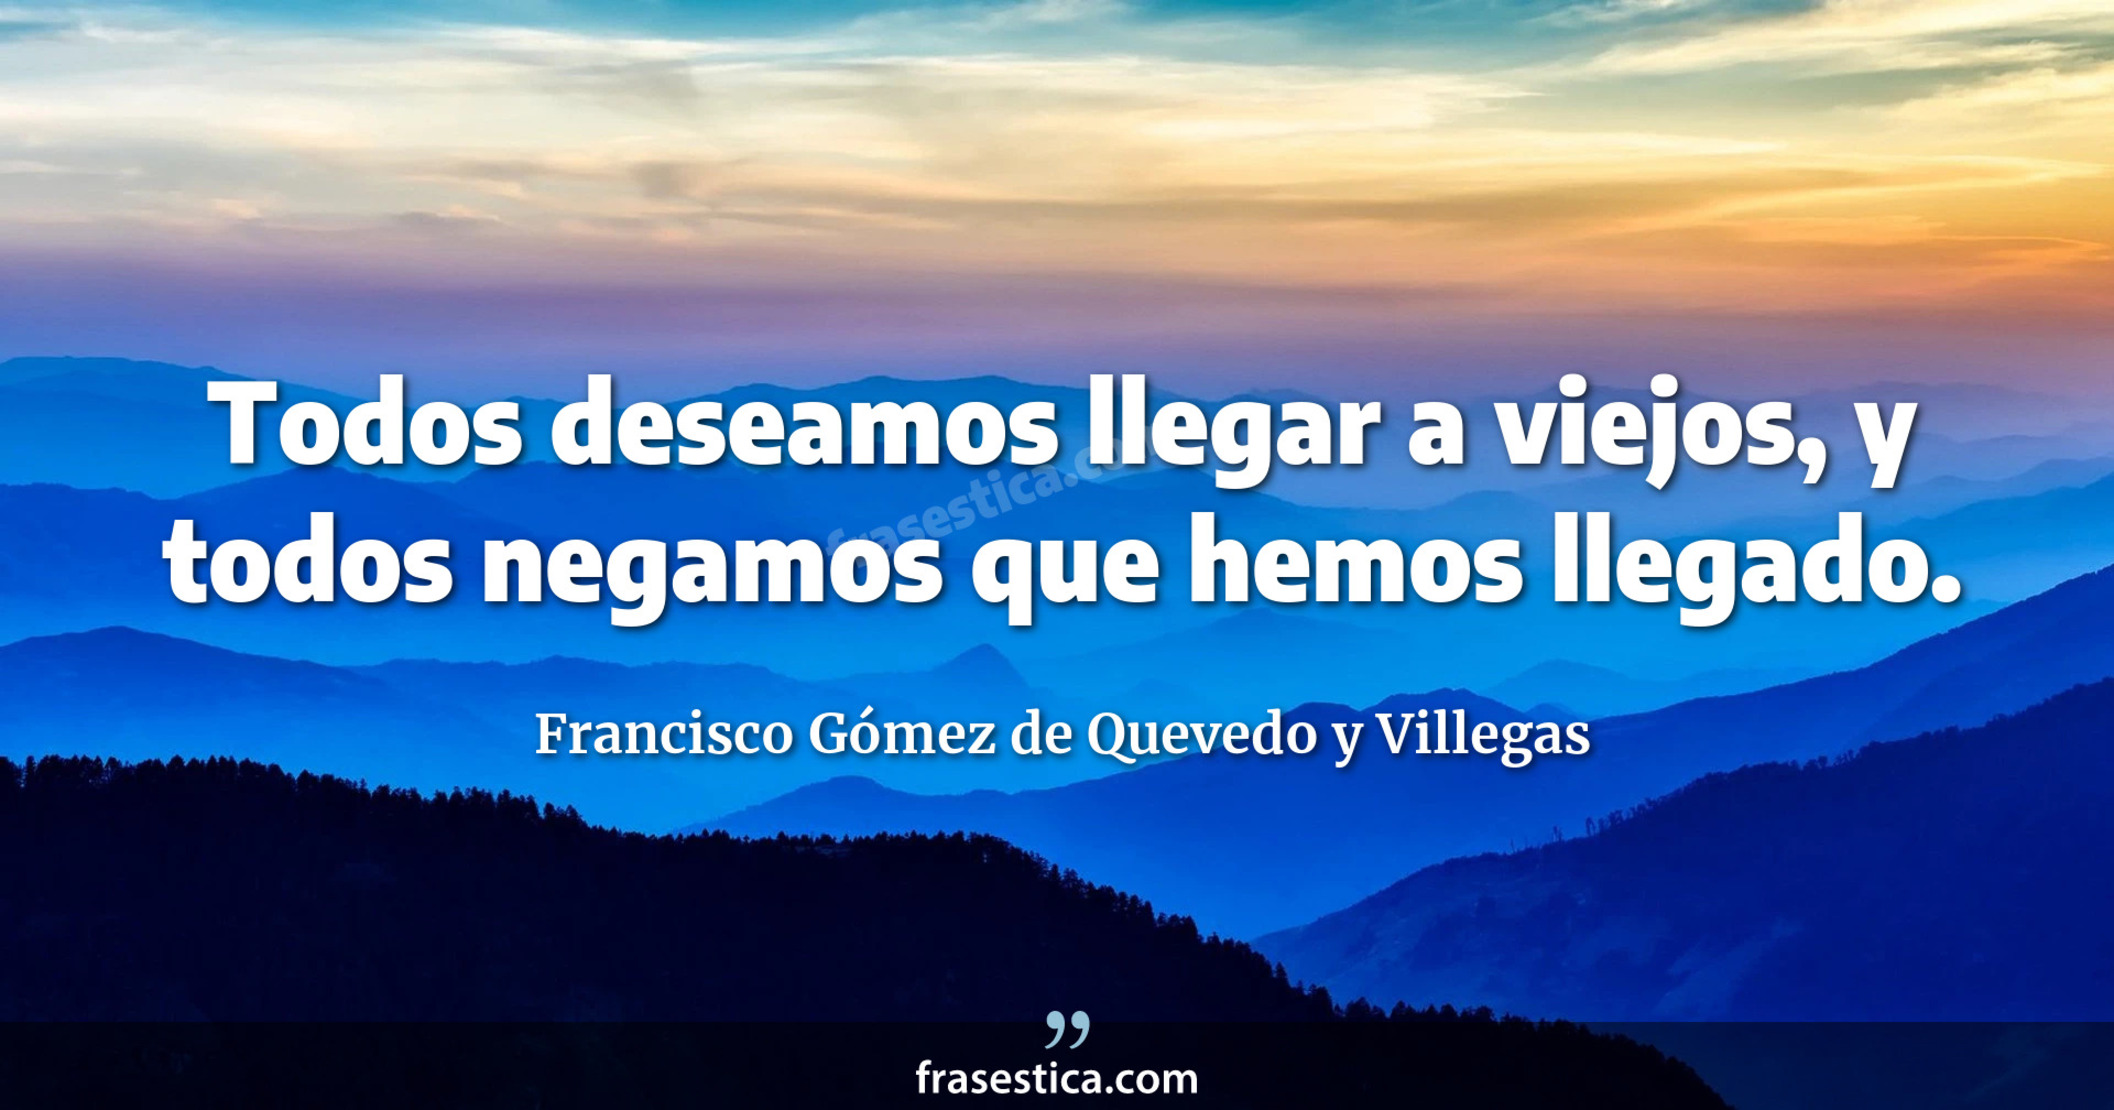 Todos deseamos llegar a viejos, y todos negamos que hemos llegado. - Francisco Gómez de Quevedo y Villegas